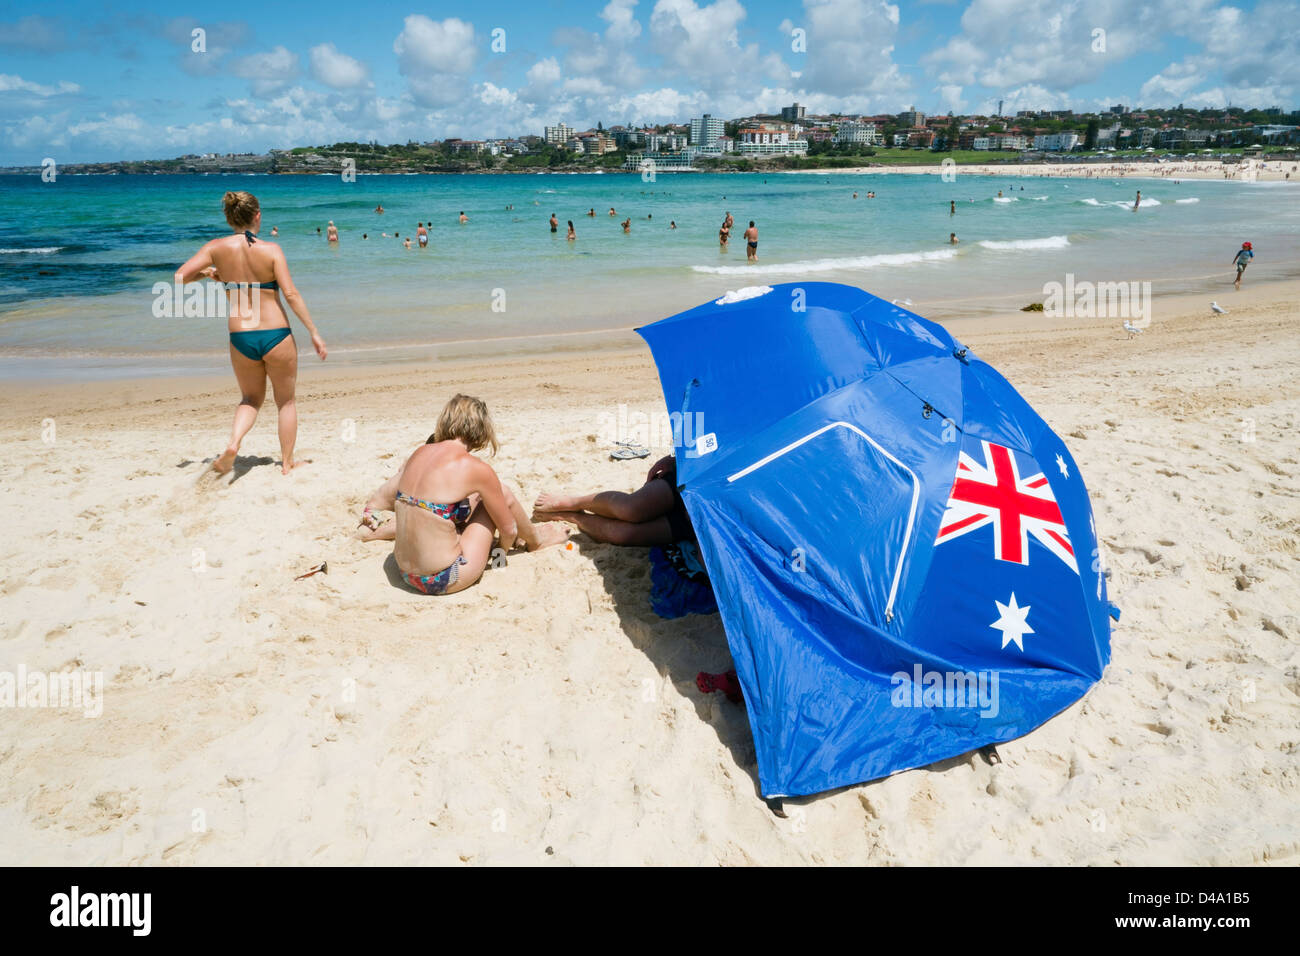 Vue d'été de la plage de Bondi à Sydney, Nouvelle Galles du Sud en Australie Banque D'Images